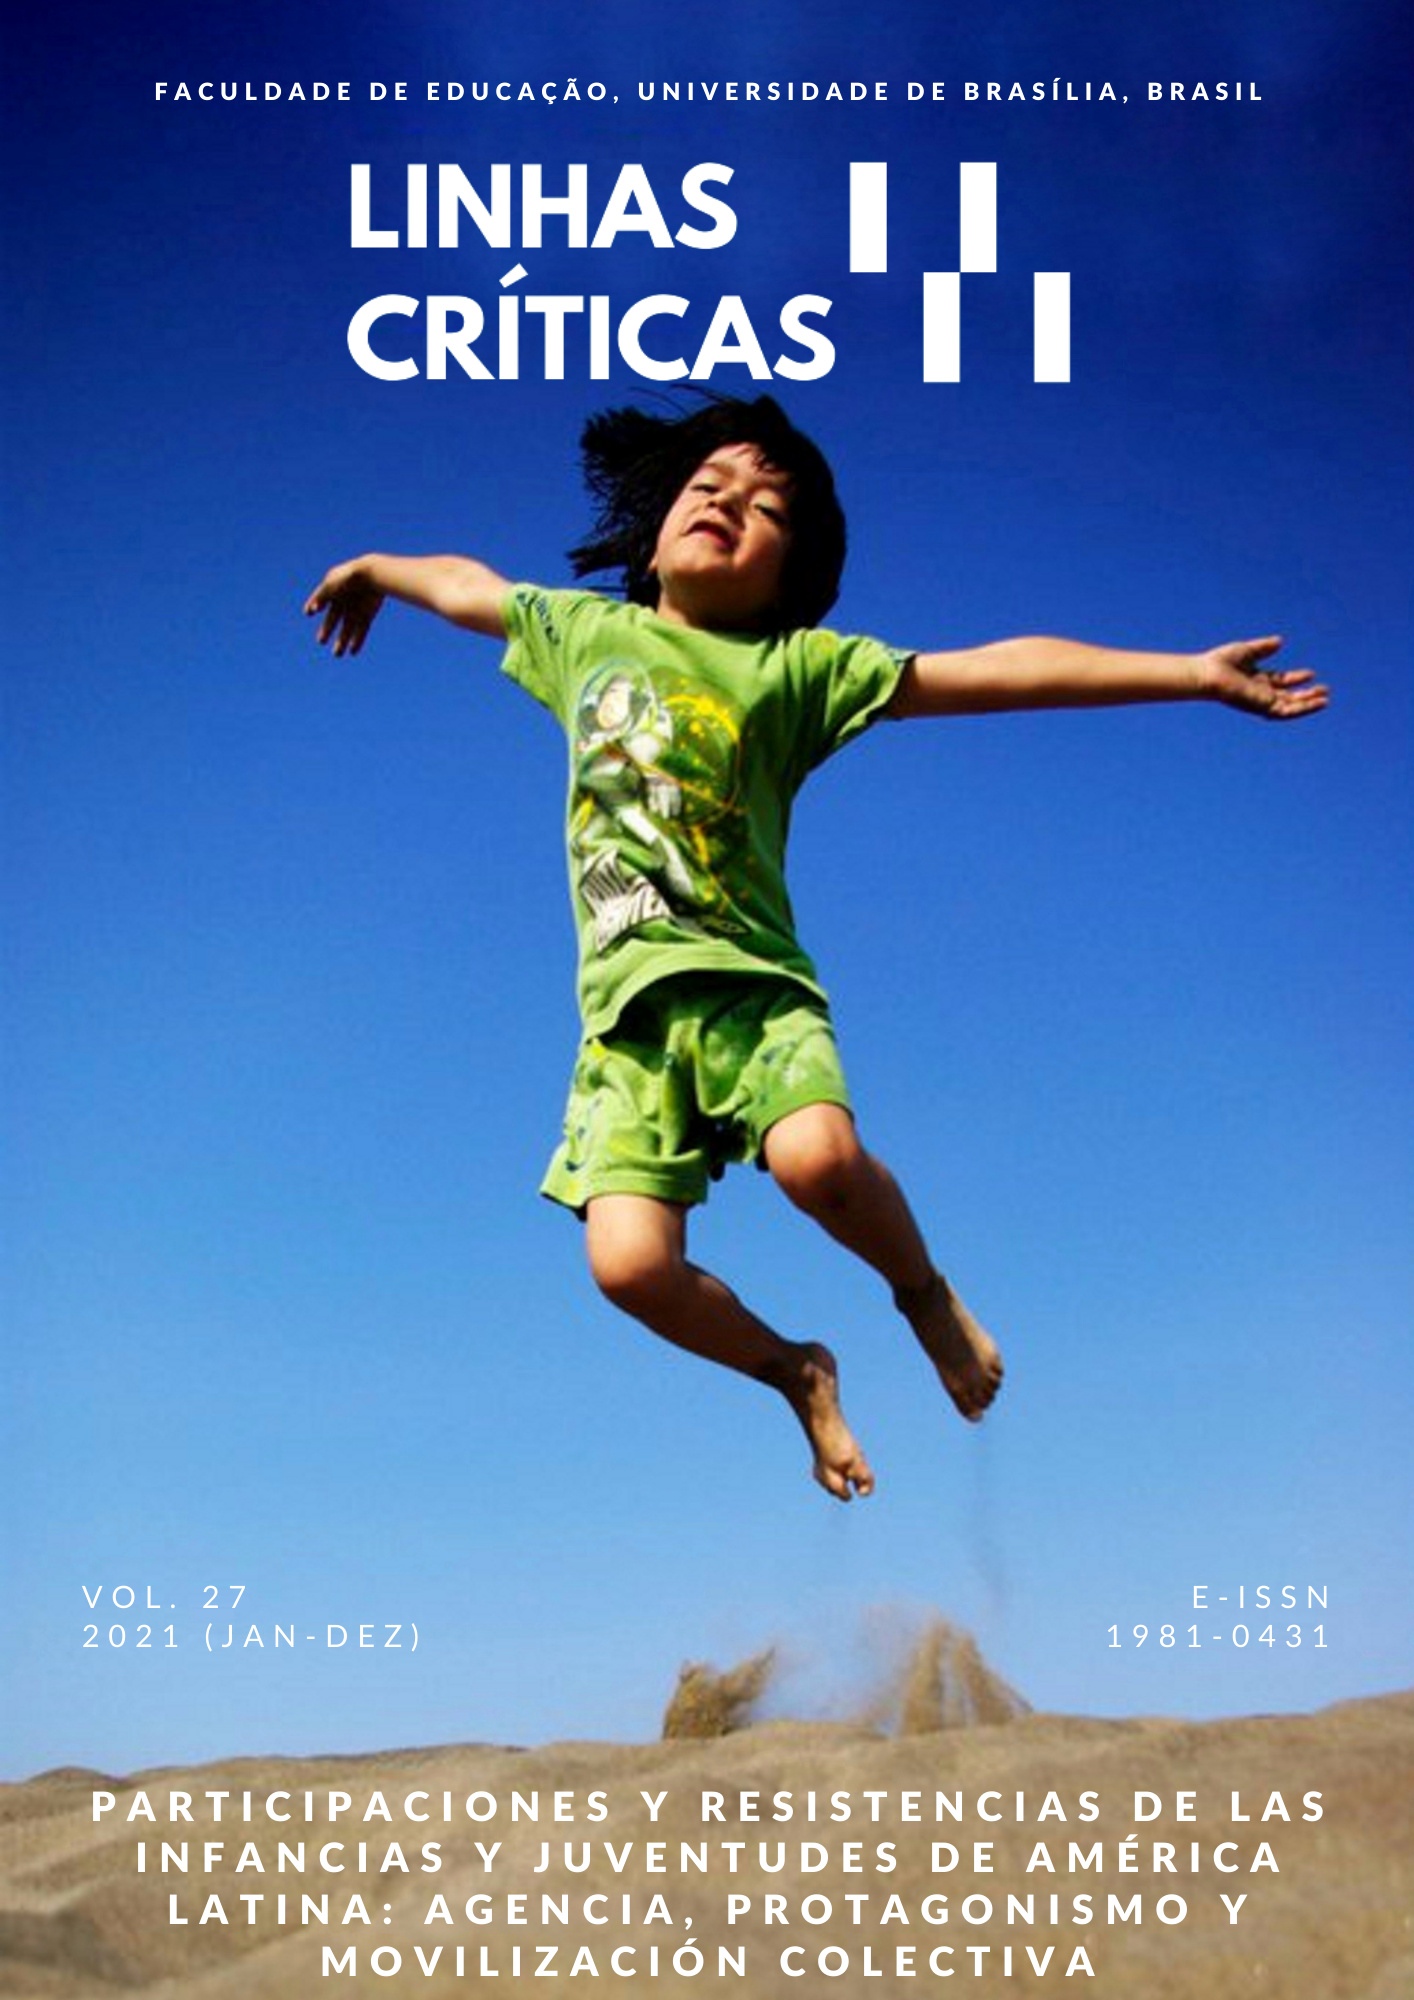 					View Vol. 27 (2021): Revista Linhas Críticas v. 27 (jan-dez)
				